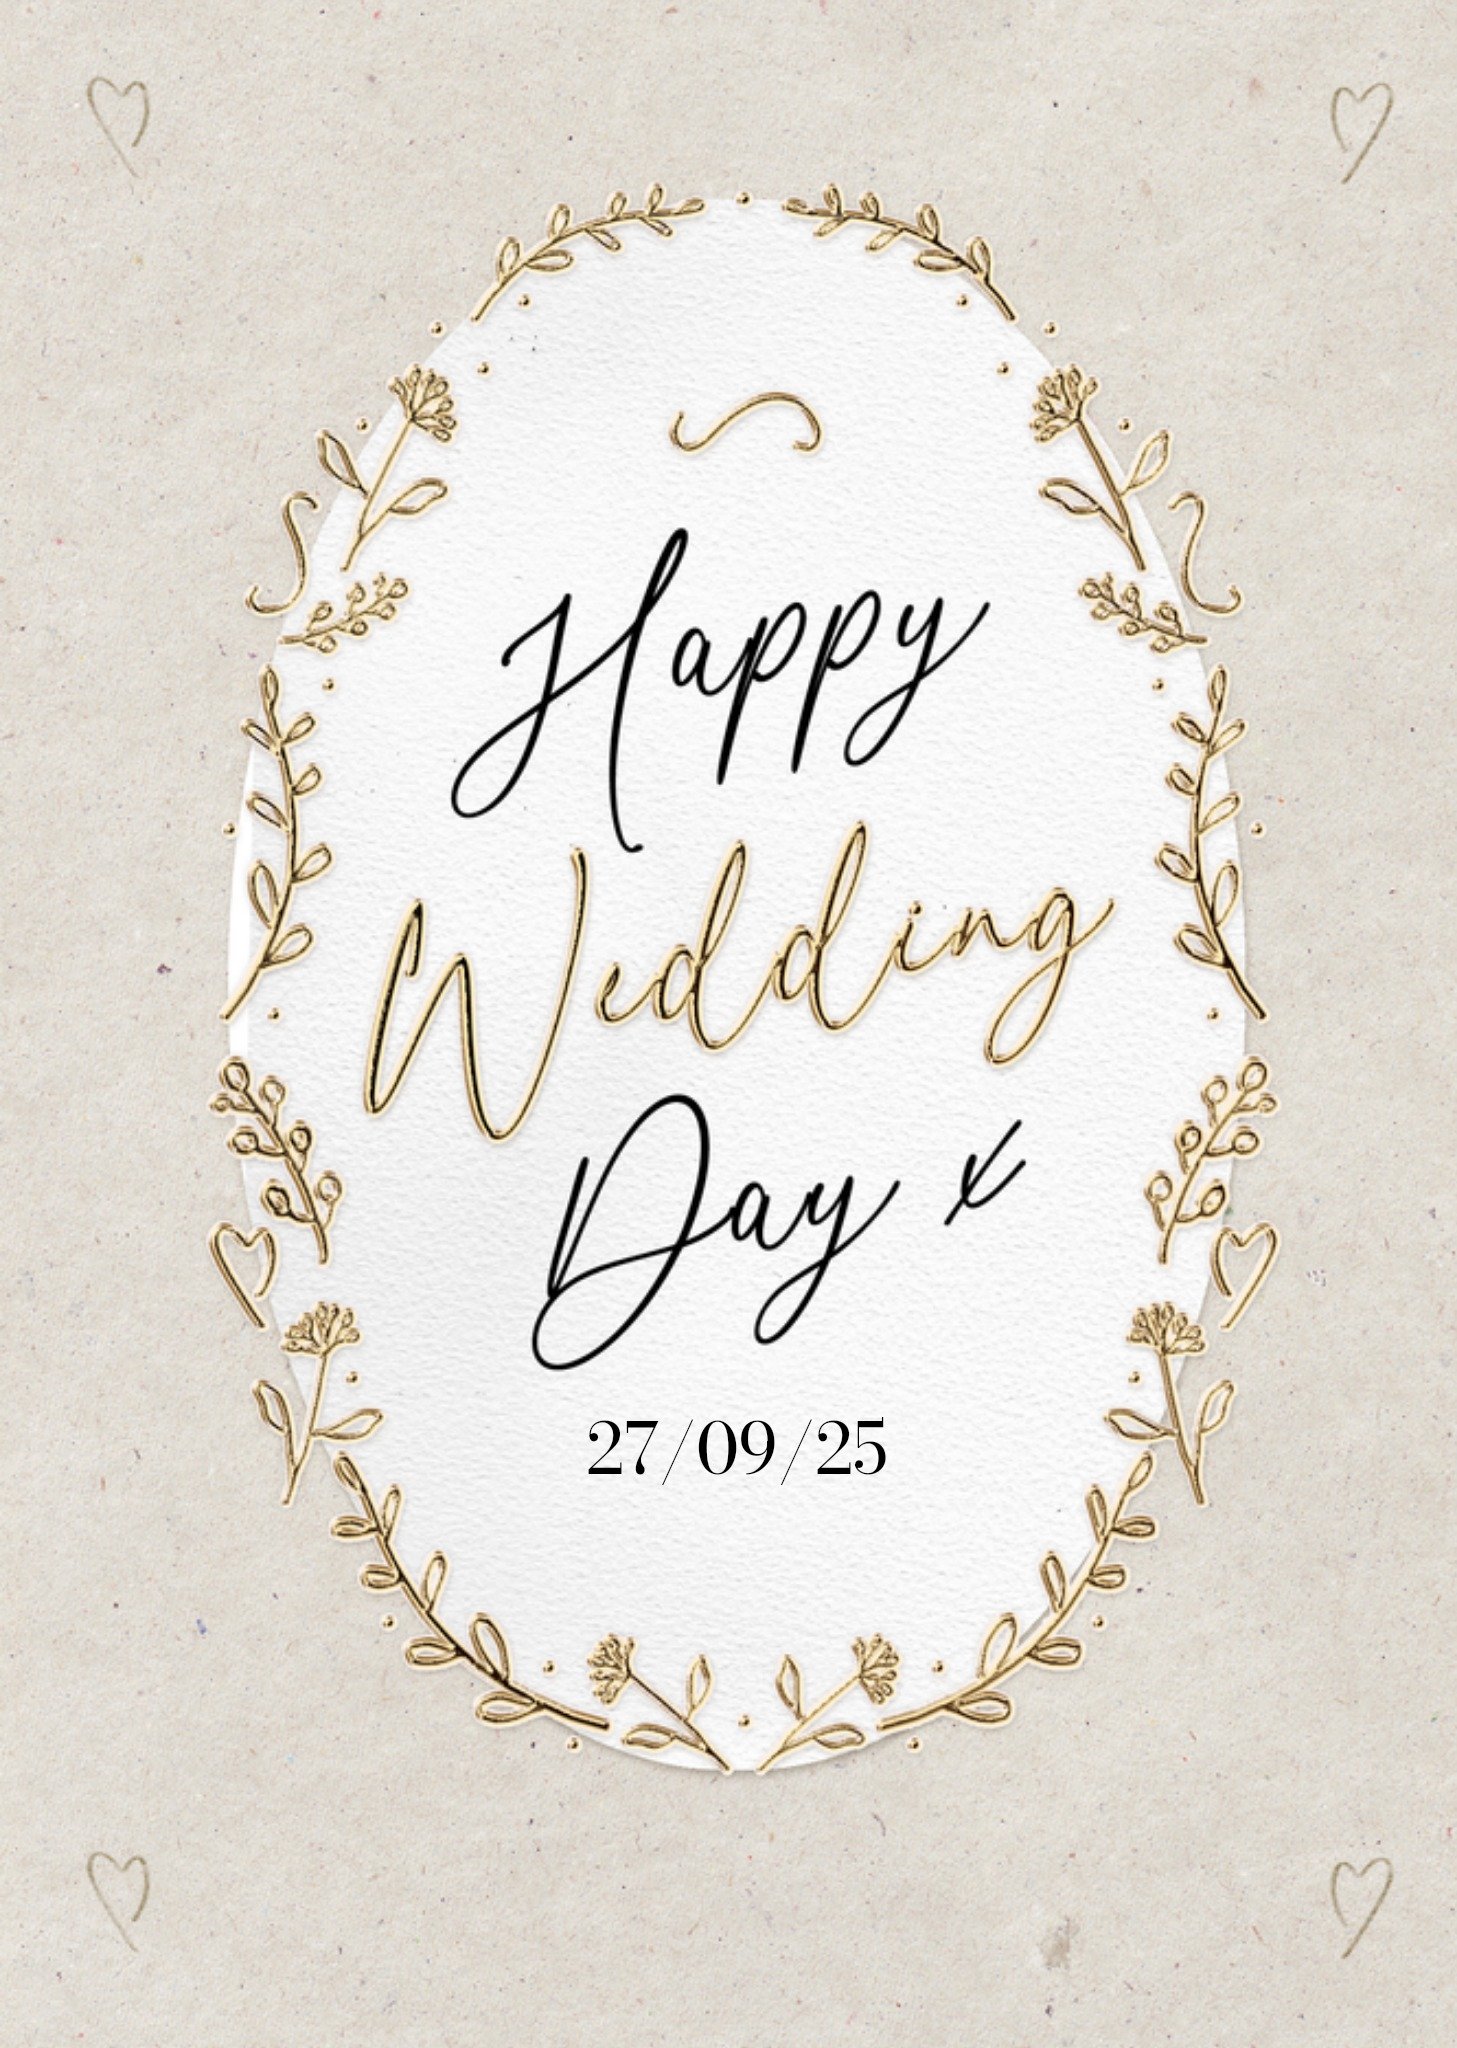 Moonpig Happy Wedding Day Card Ecard